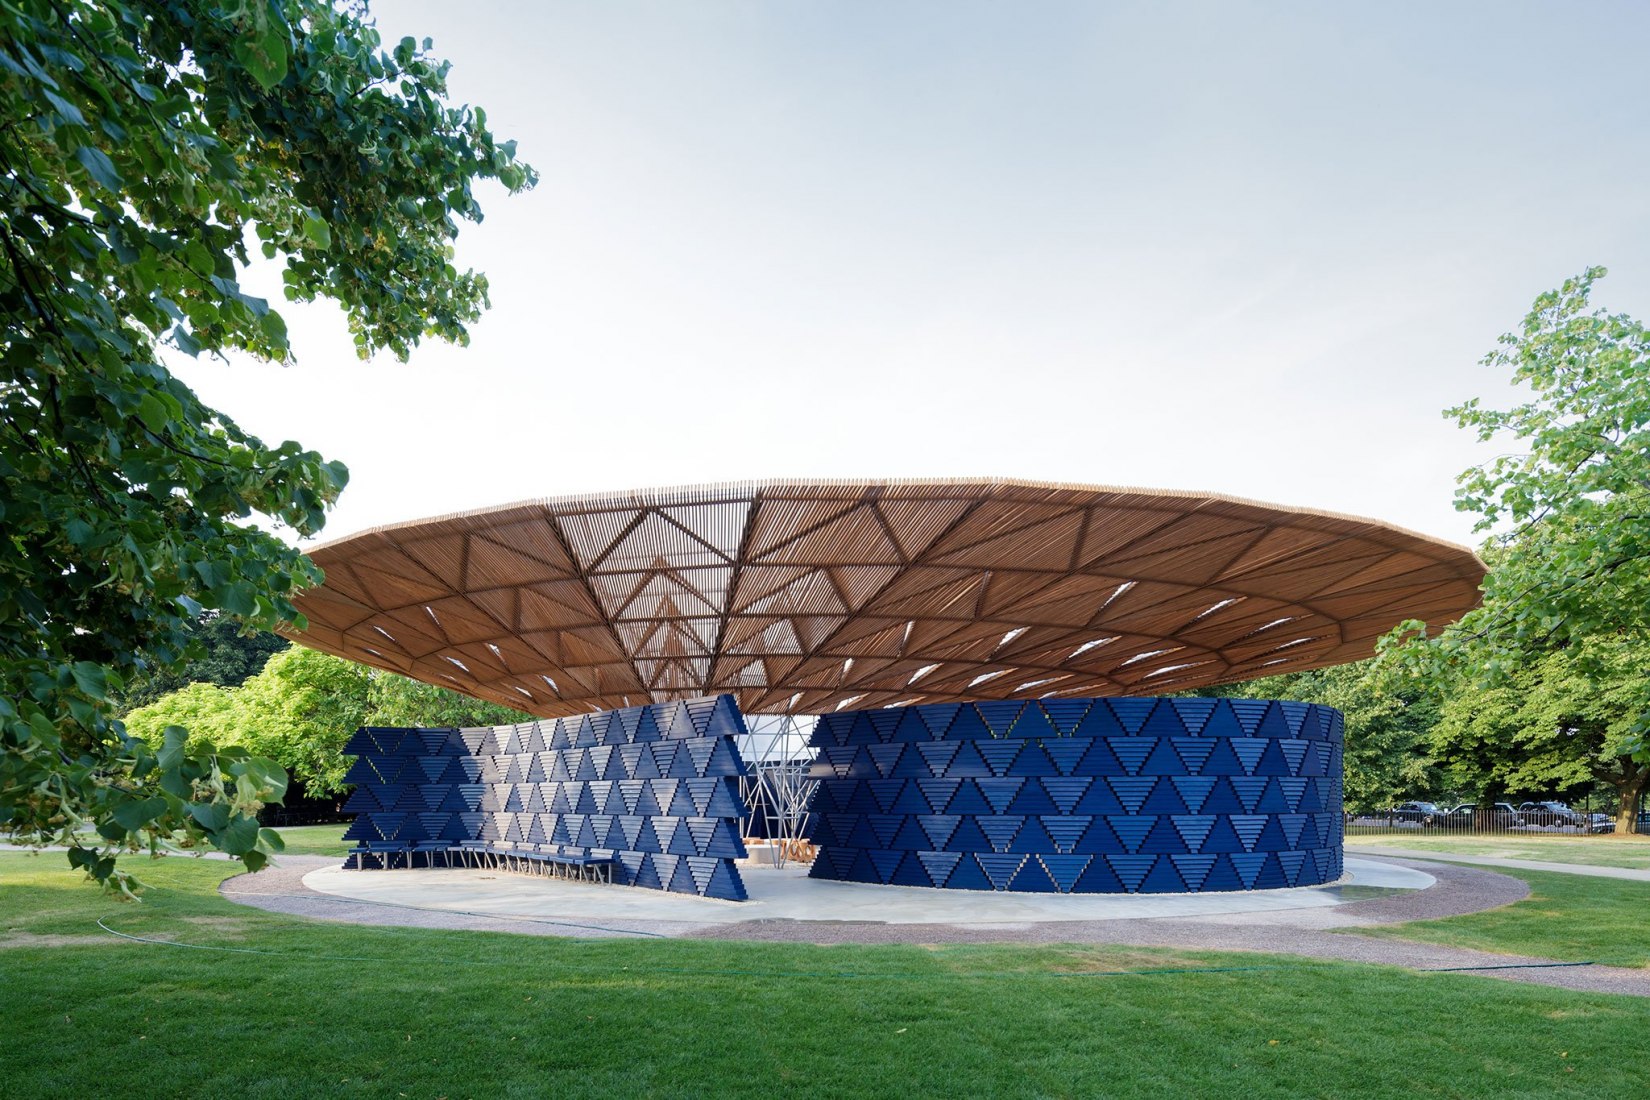 Serpentine Pavilion 2017, designed by Francis Kéré. Serpentine Gallery, London (23 June – 8 October 2017) © Kéré Architecture. Photograph © 2017 Iwan Baan. 